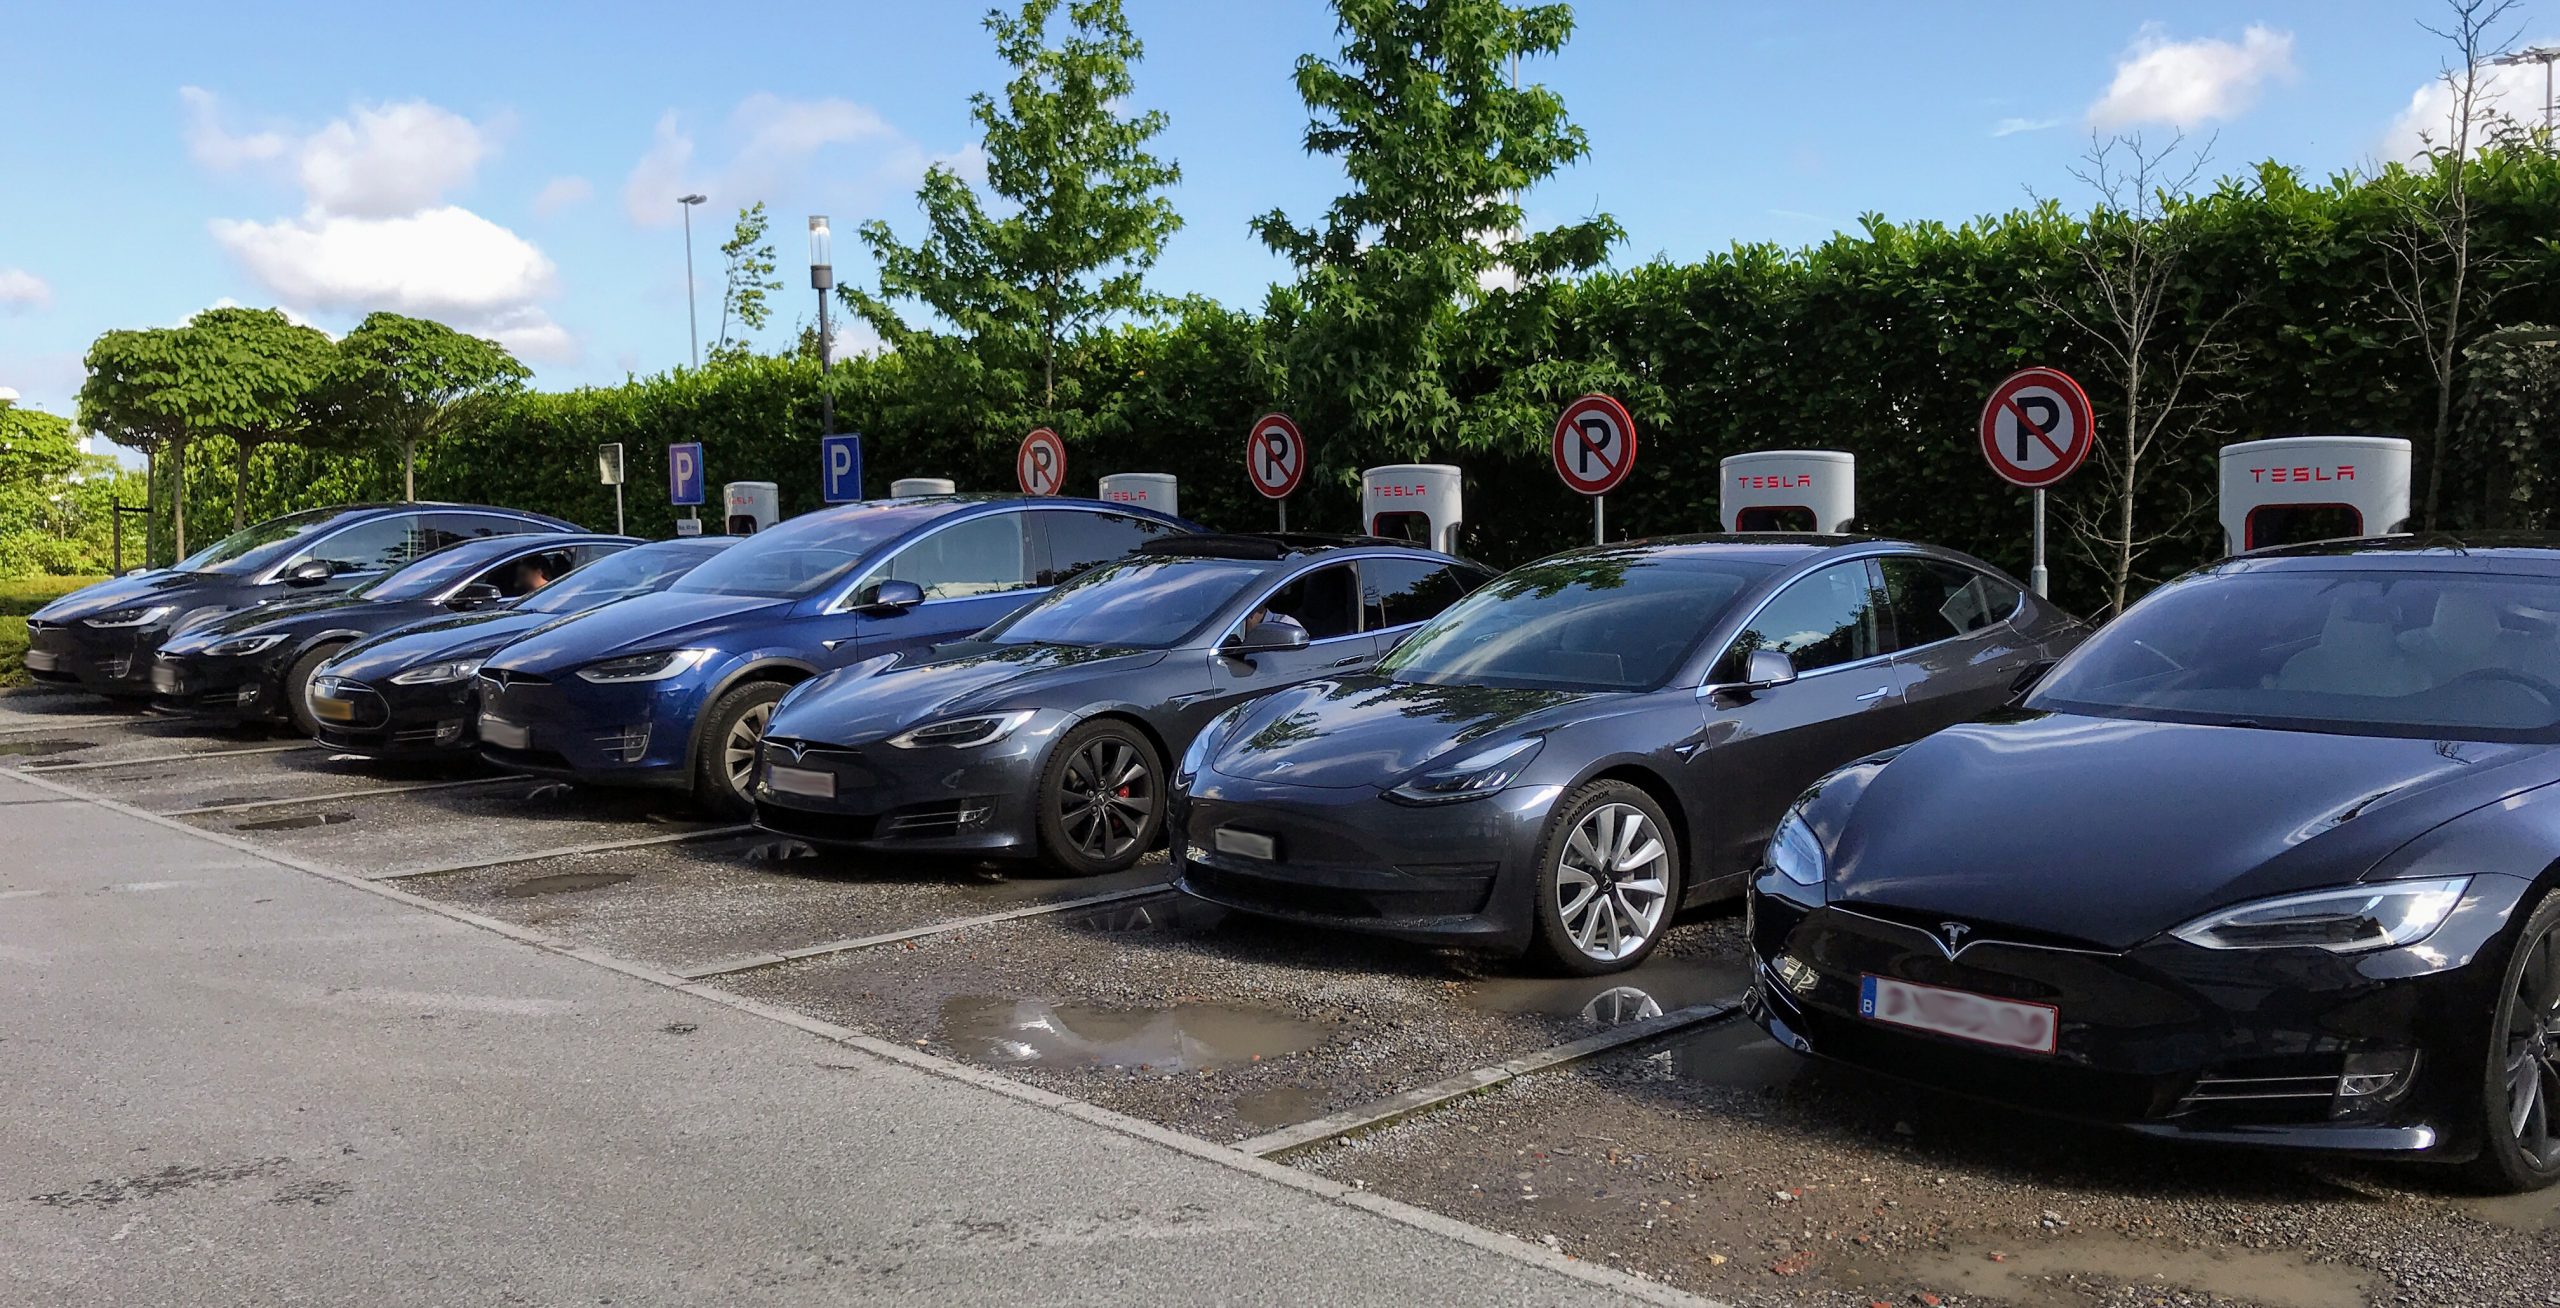 В Германии электрокары Tesla опередили Volkswagen по количеству зарегистрированных авто, — СМИ